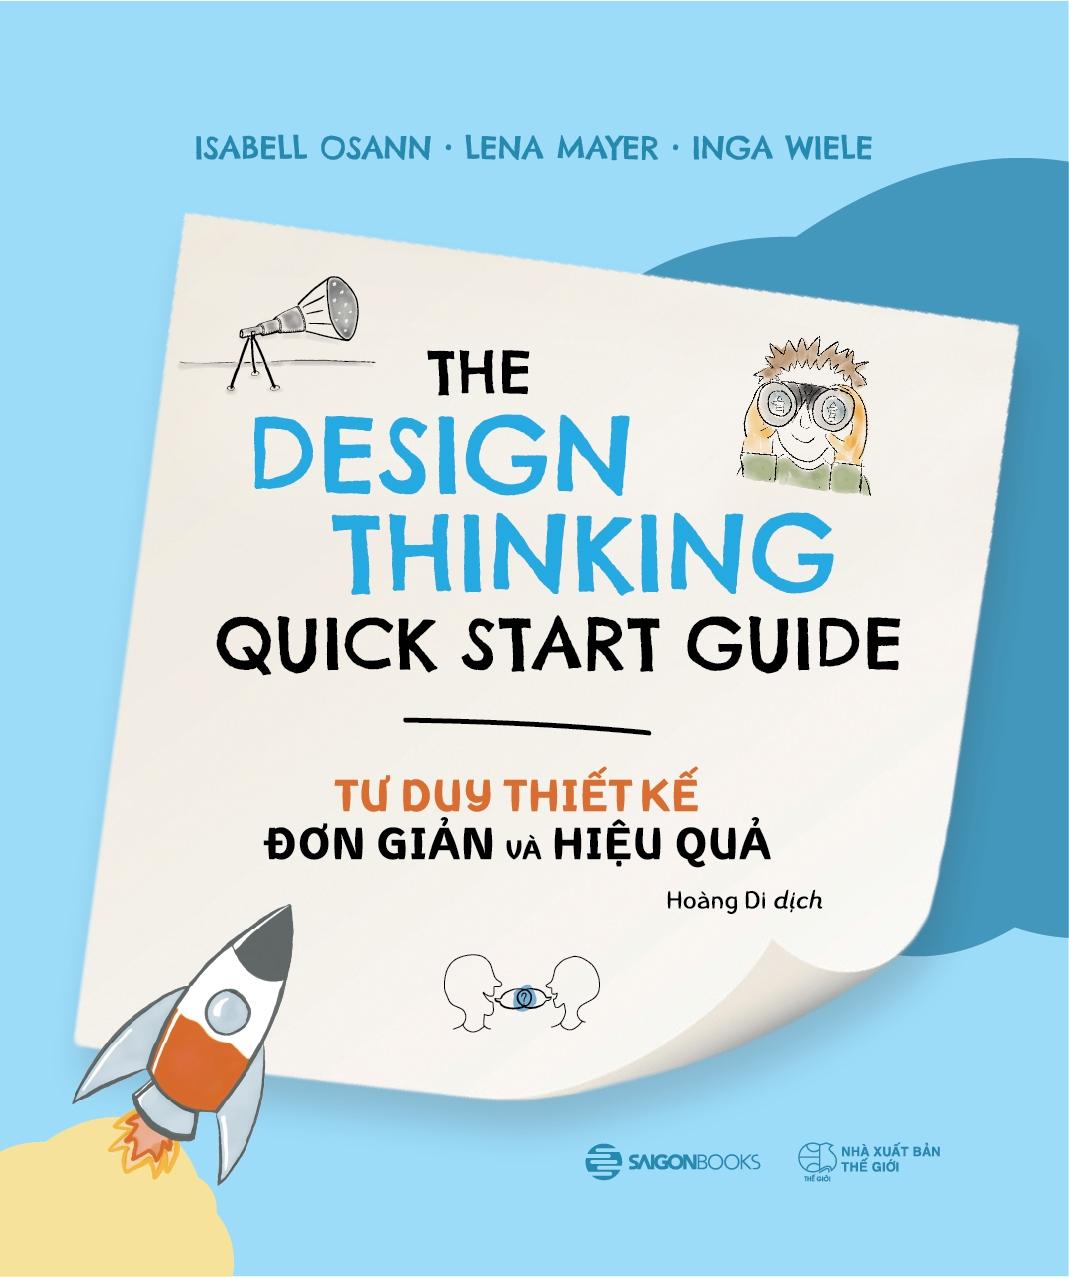 Tư Duy Thiết Kế Đơn Giản Và Hiệu Quả - The Design Thinking Quick Start Guide